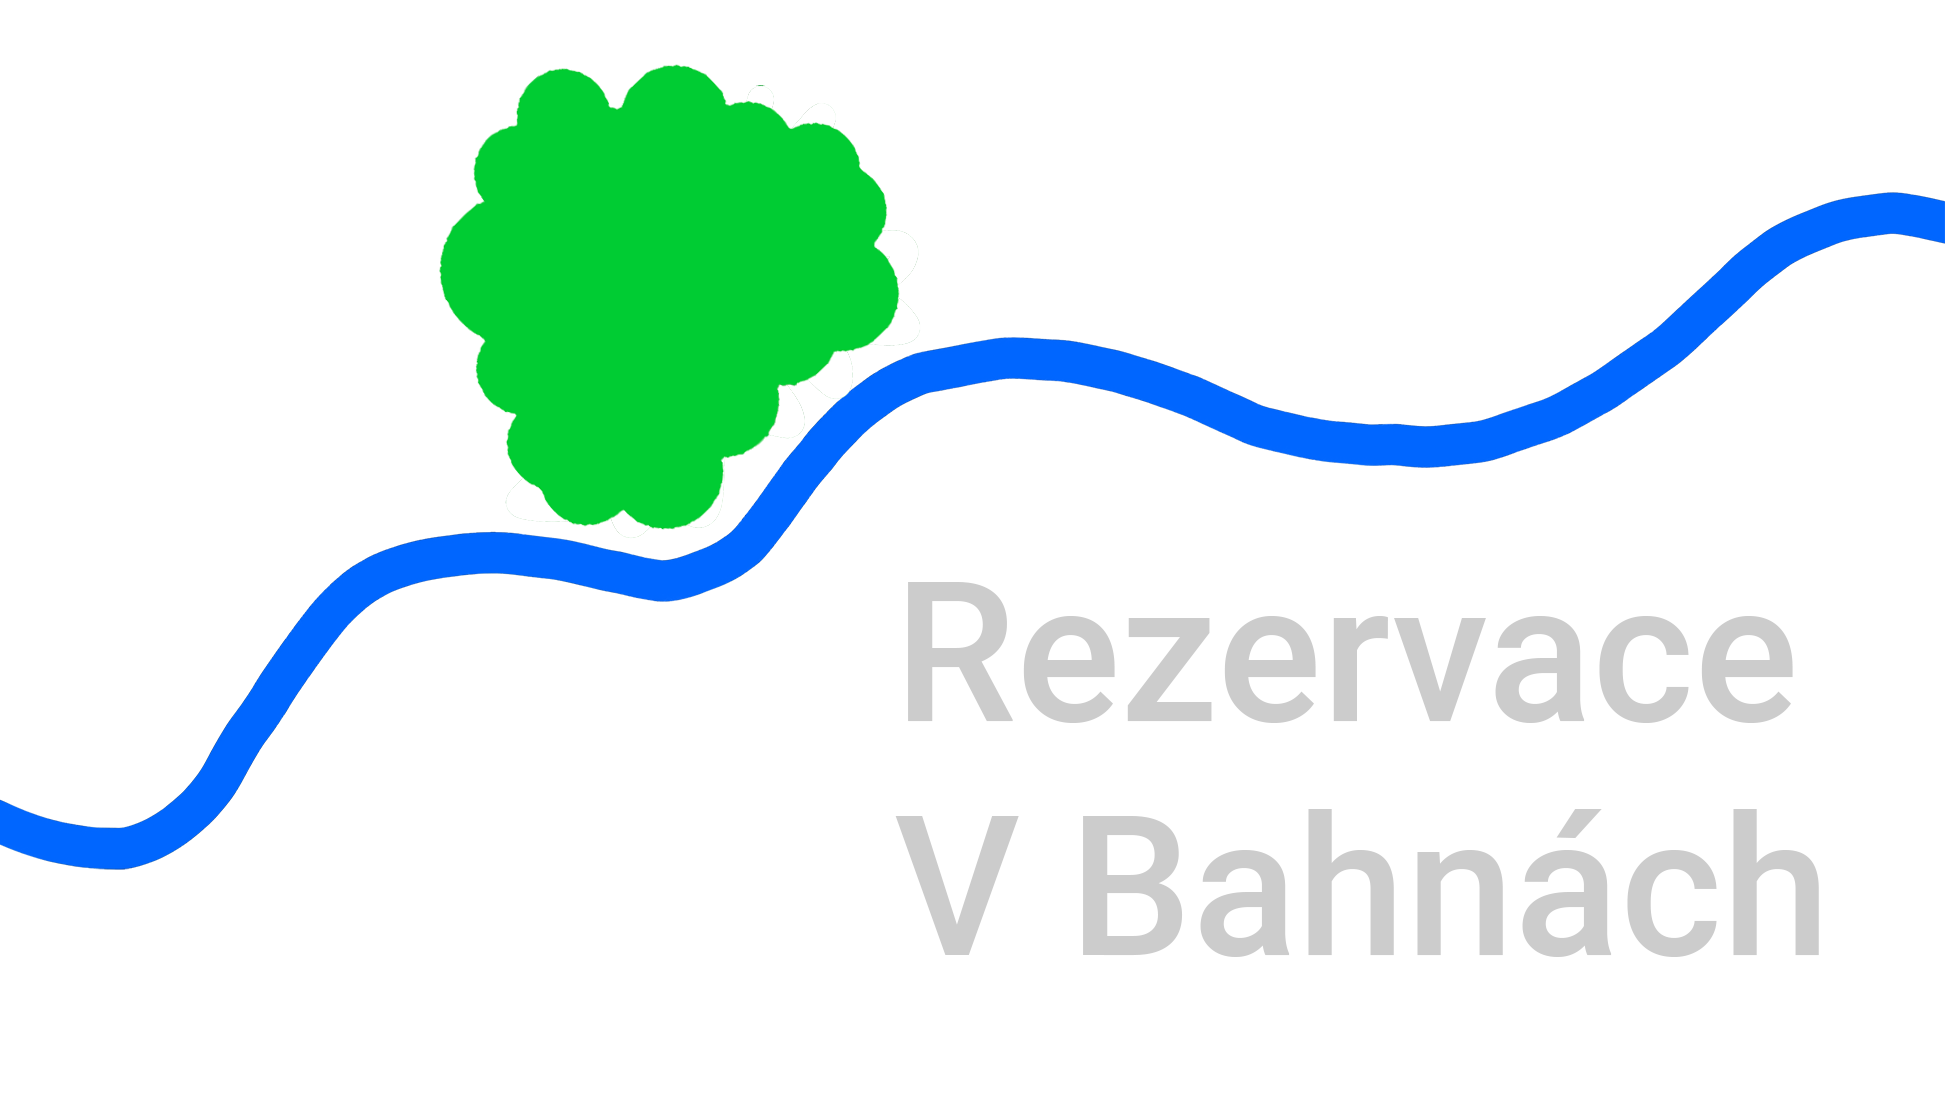 Rezervace V Bahnach